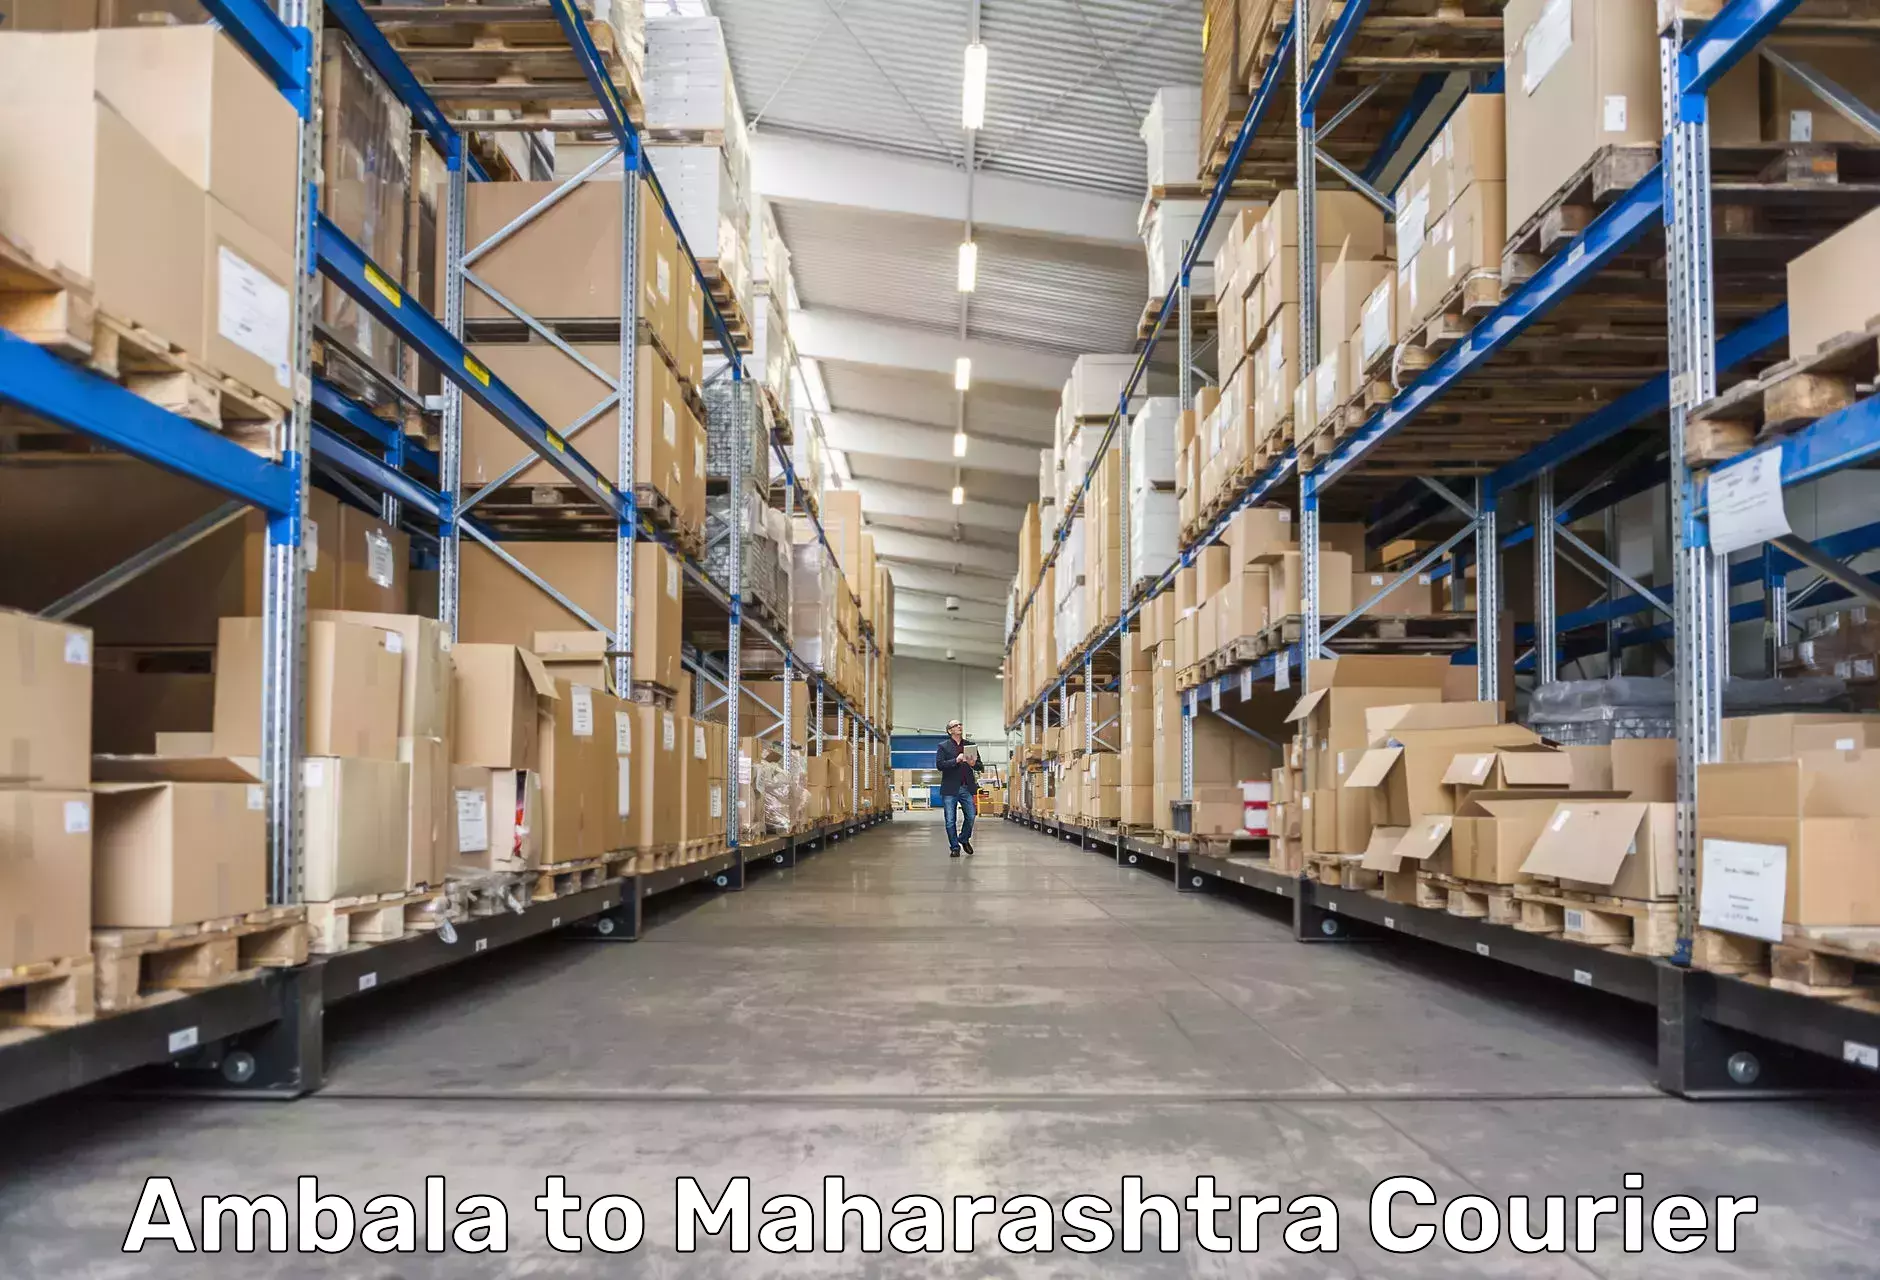 Express logistics providers Ambala to Maharashtra